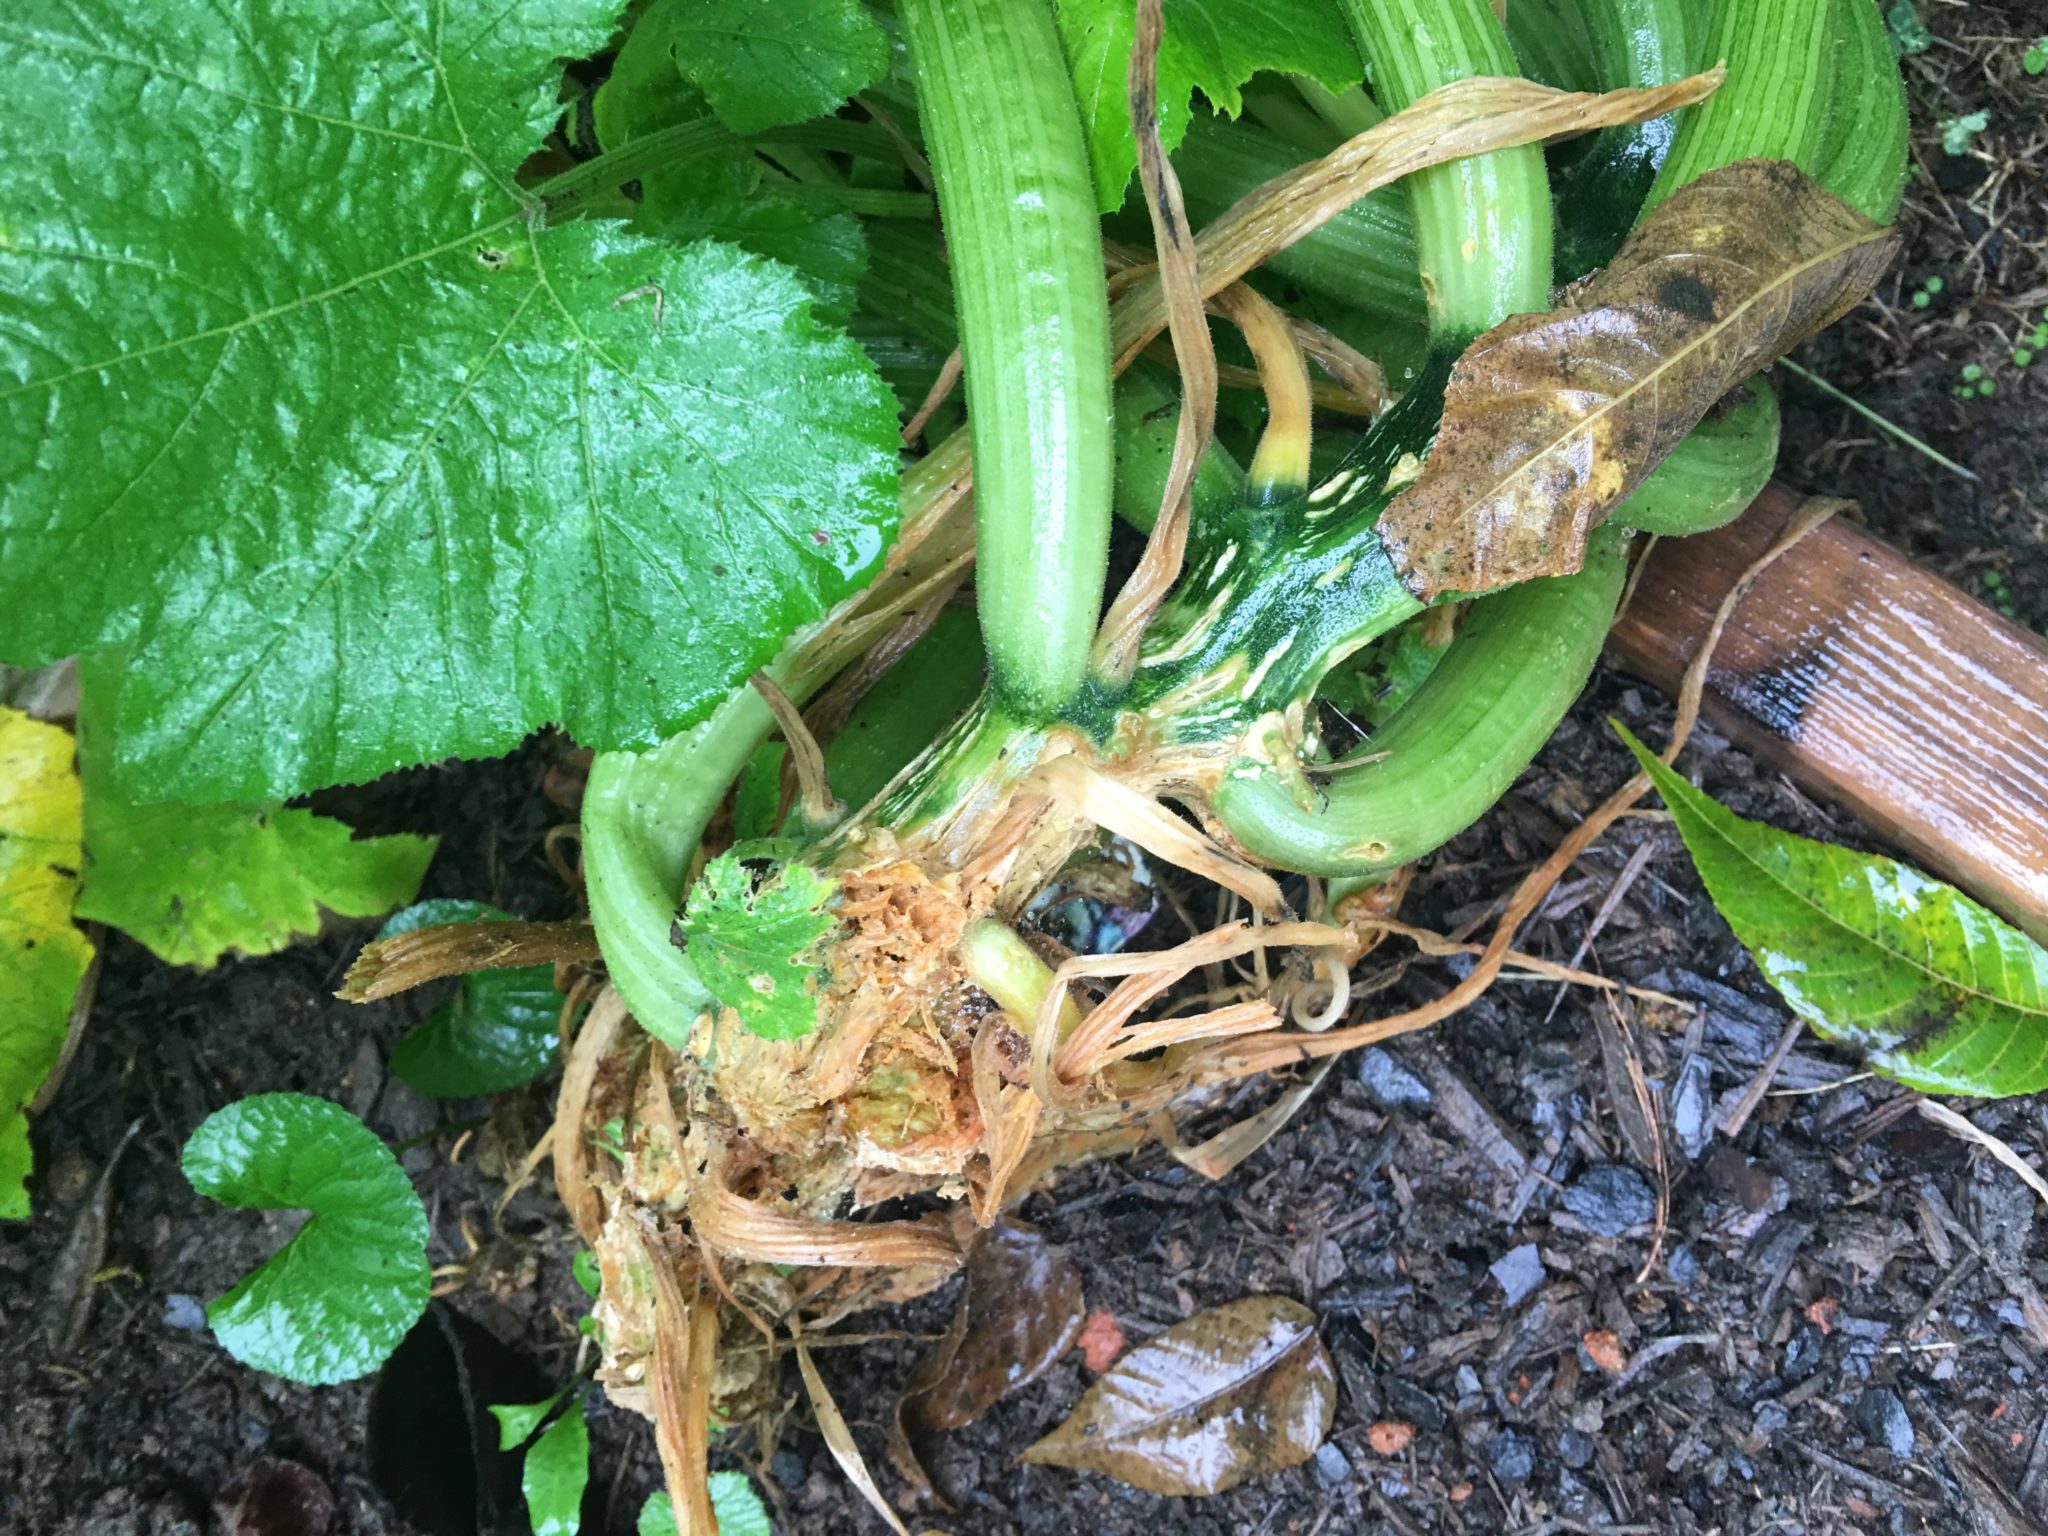 Cutworm damage to Zucchini plant